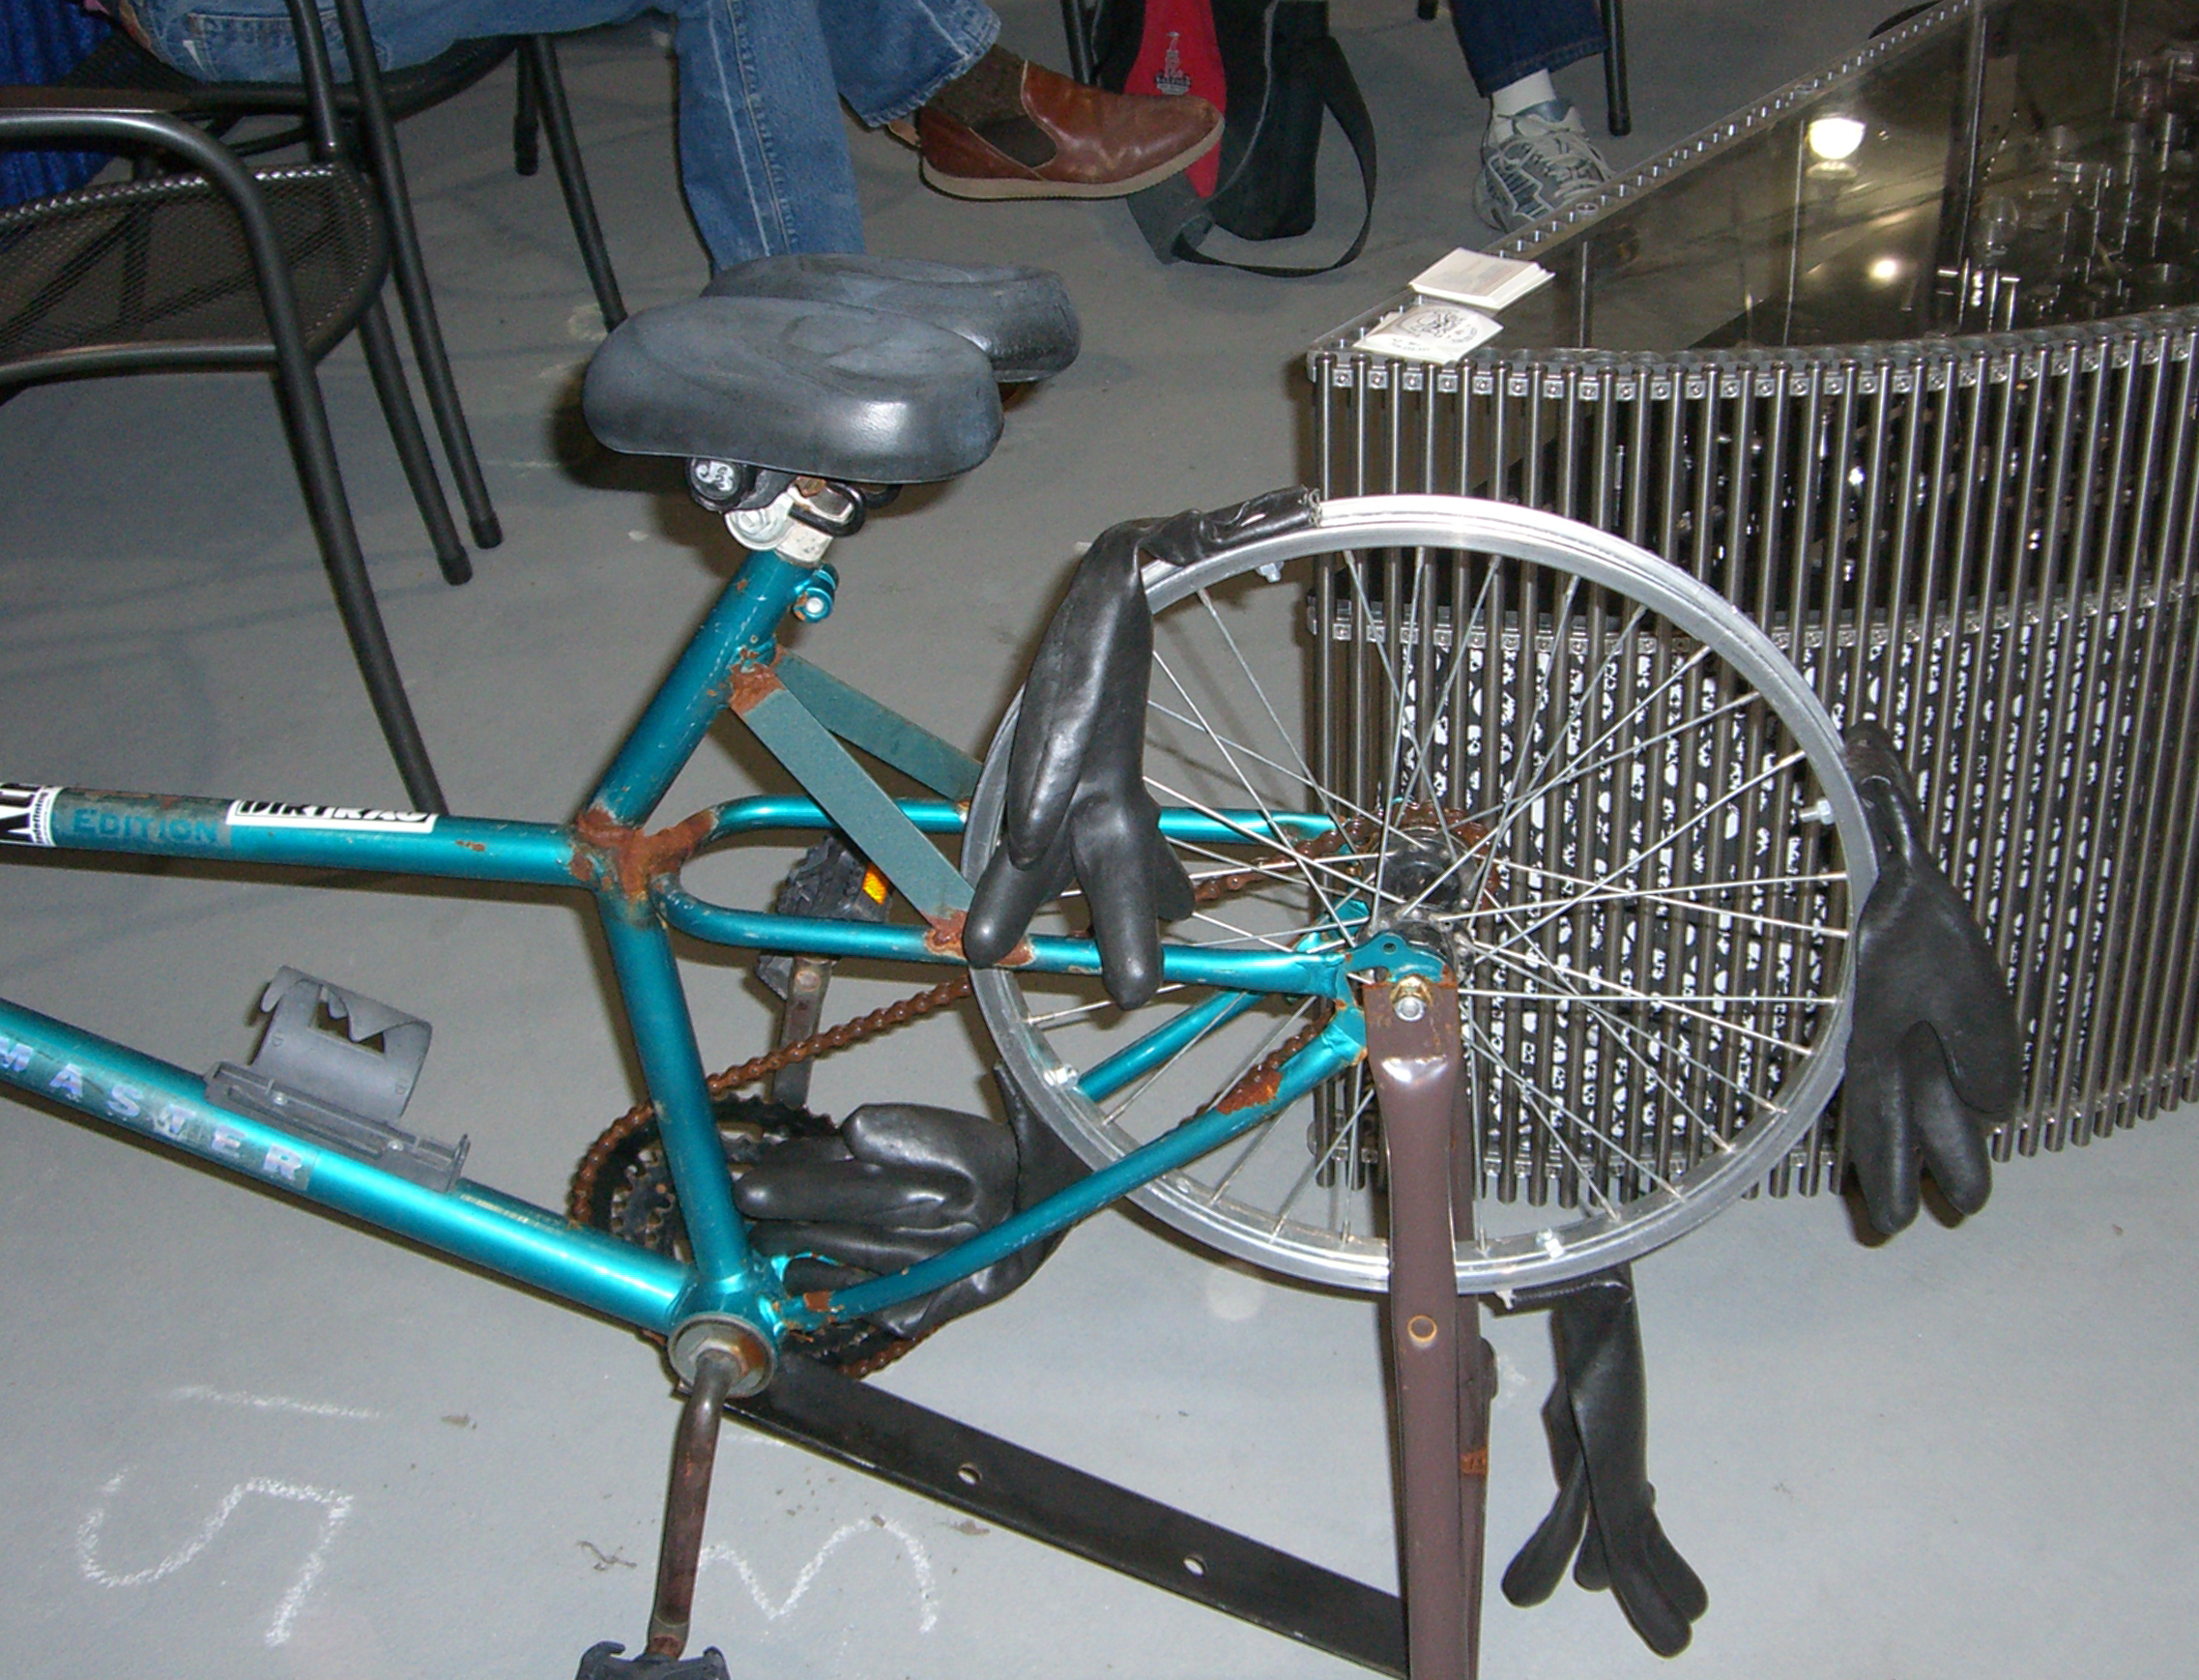 Gallery handbuilt-bikes-2007 1 of 38 spanking-machine.jpg.